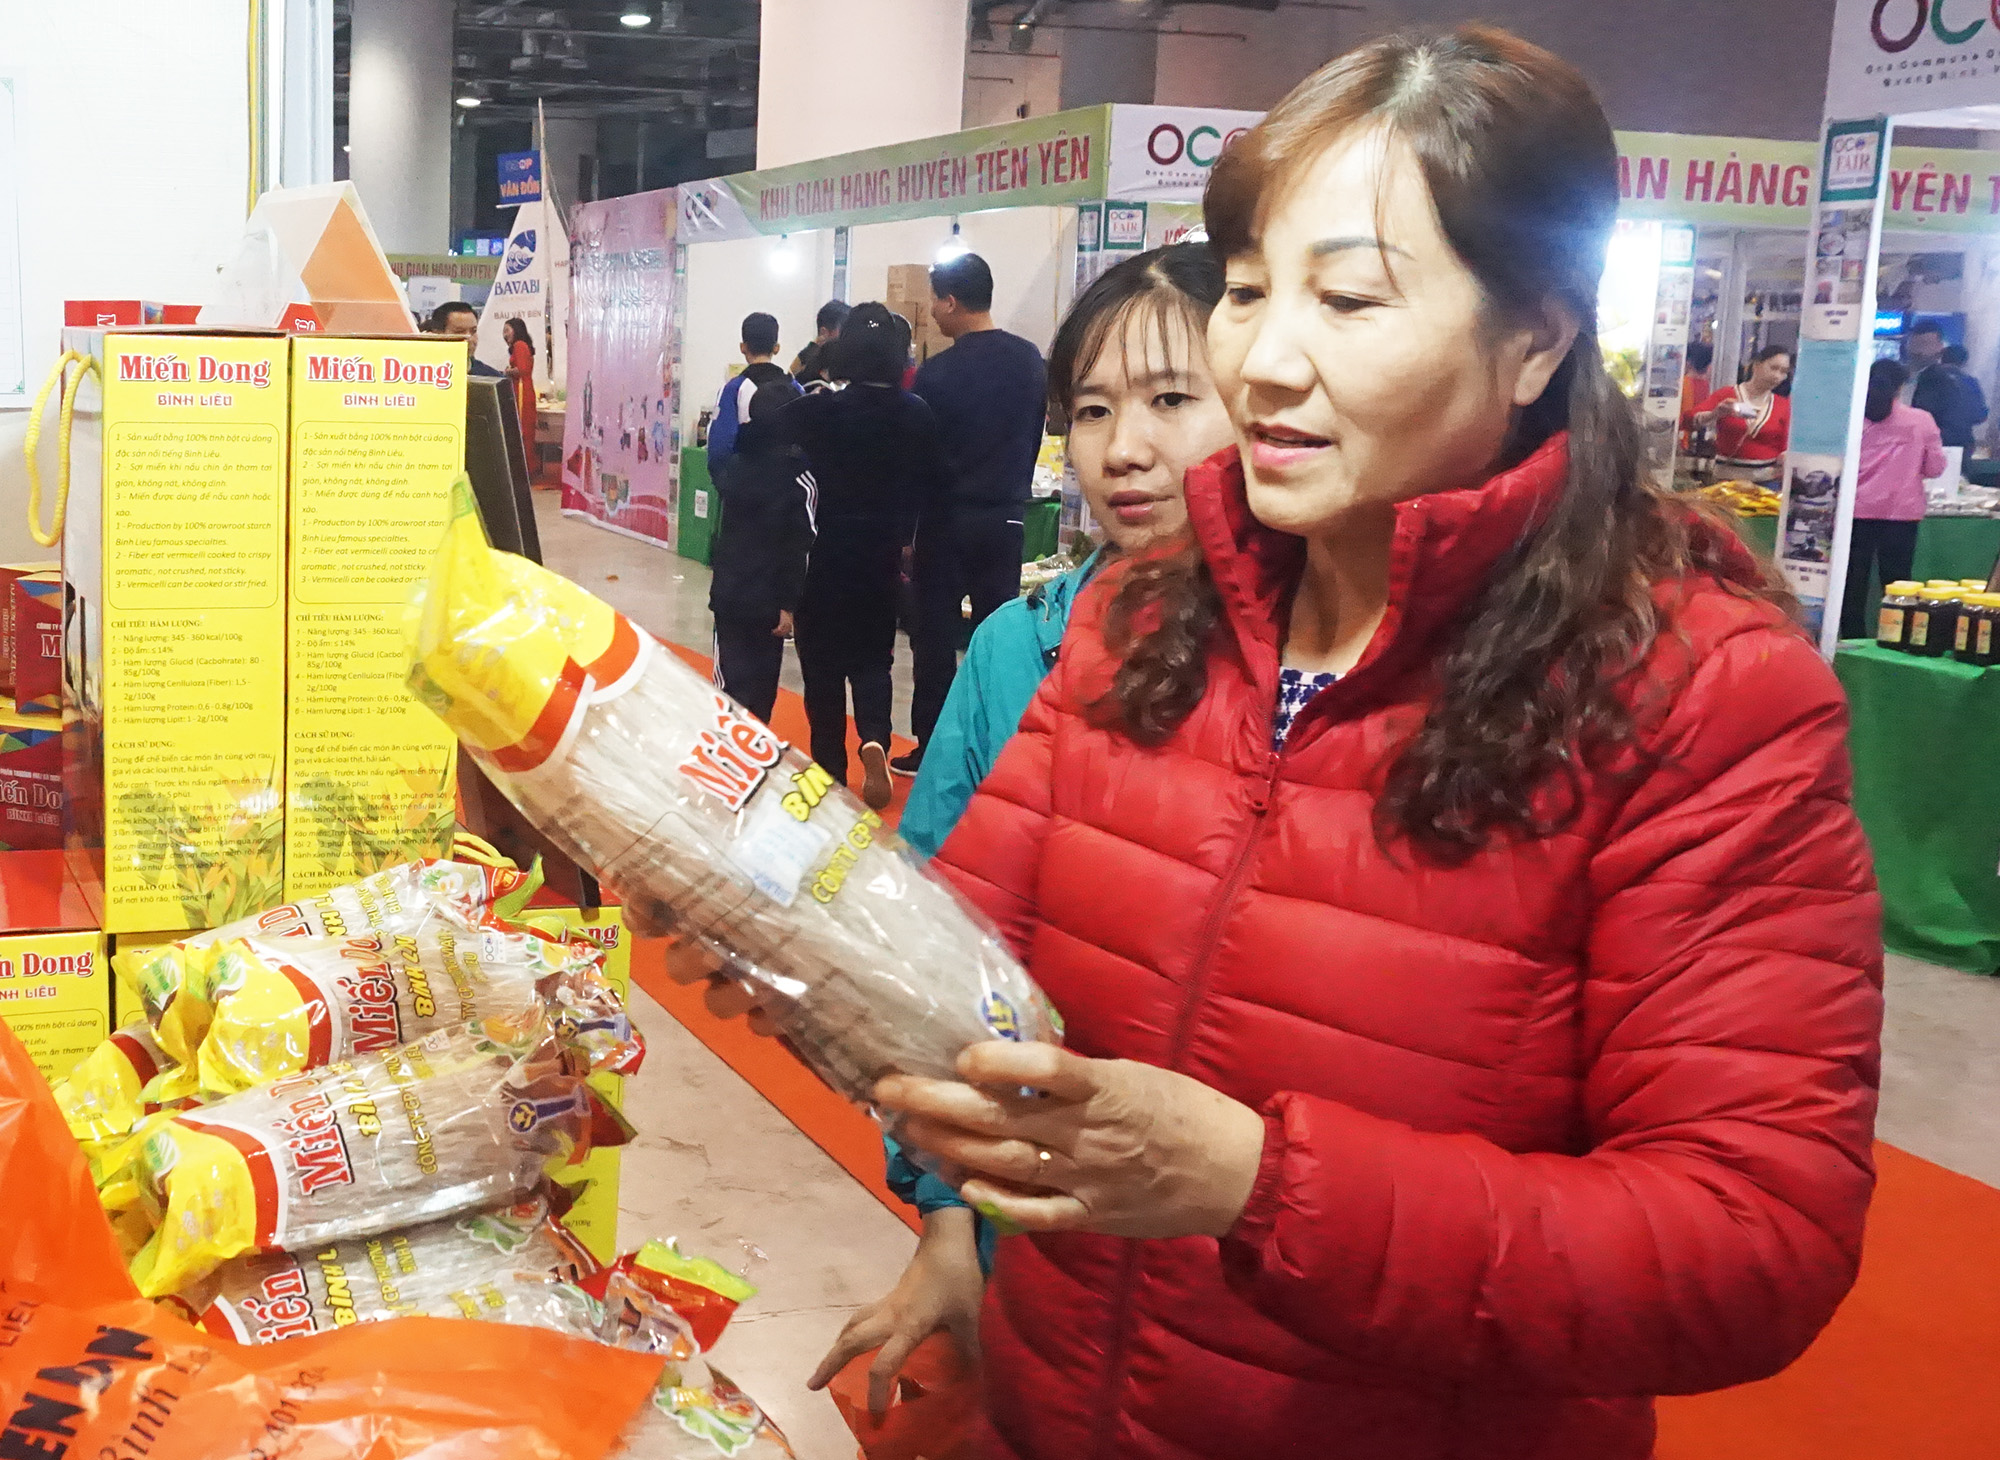 Sản phẩm miến dong Bình Liêu được bày bán tại Hội chợ OCOP Quảng Ninh - Xuân 2020.